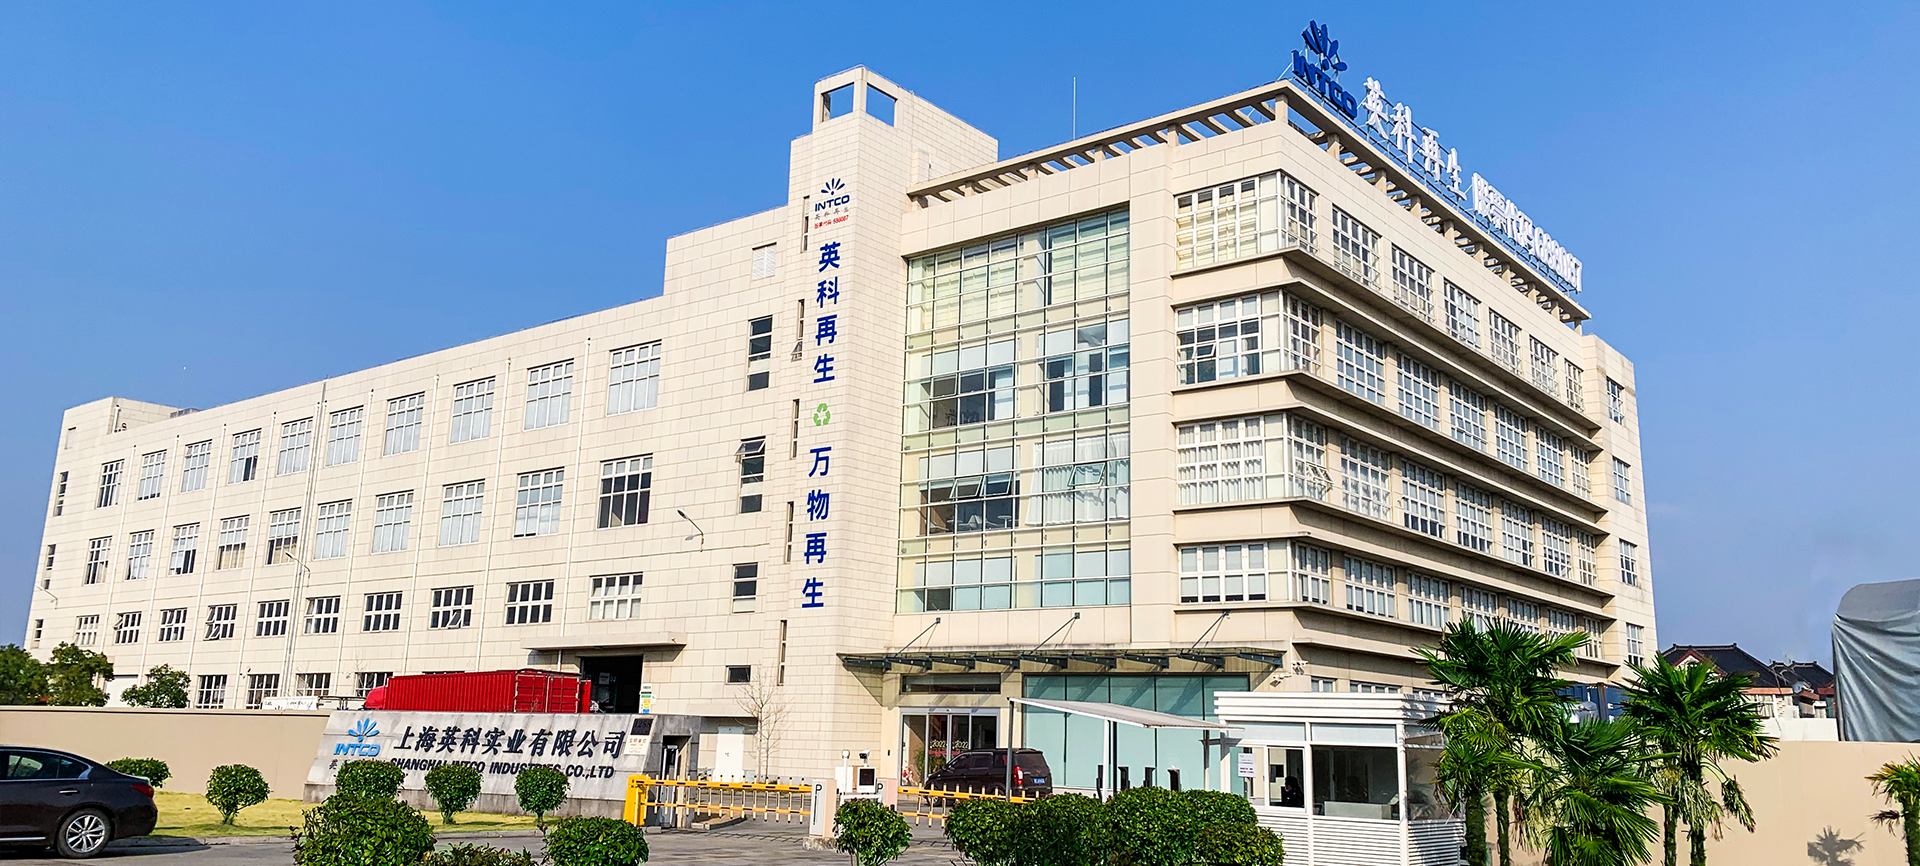 上海英科是6163银河.net163.am第2大造粒、框条及成品框类产品的生产基地